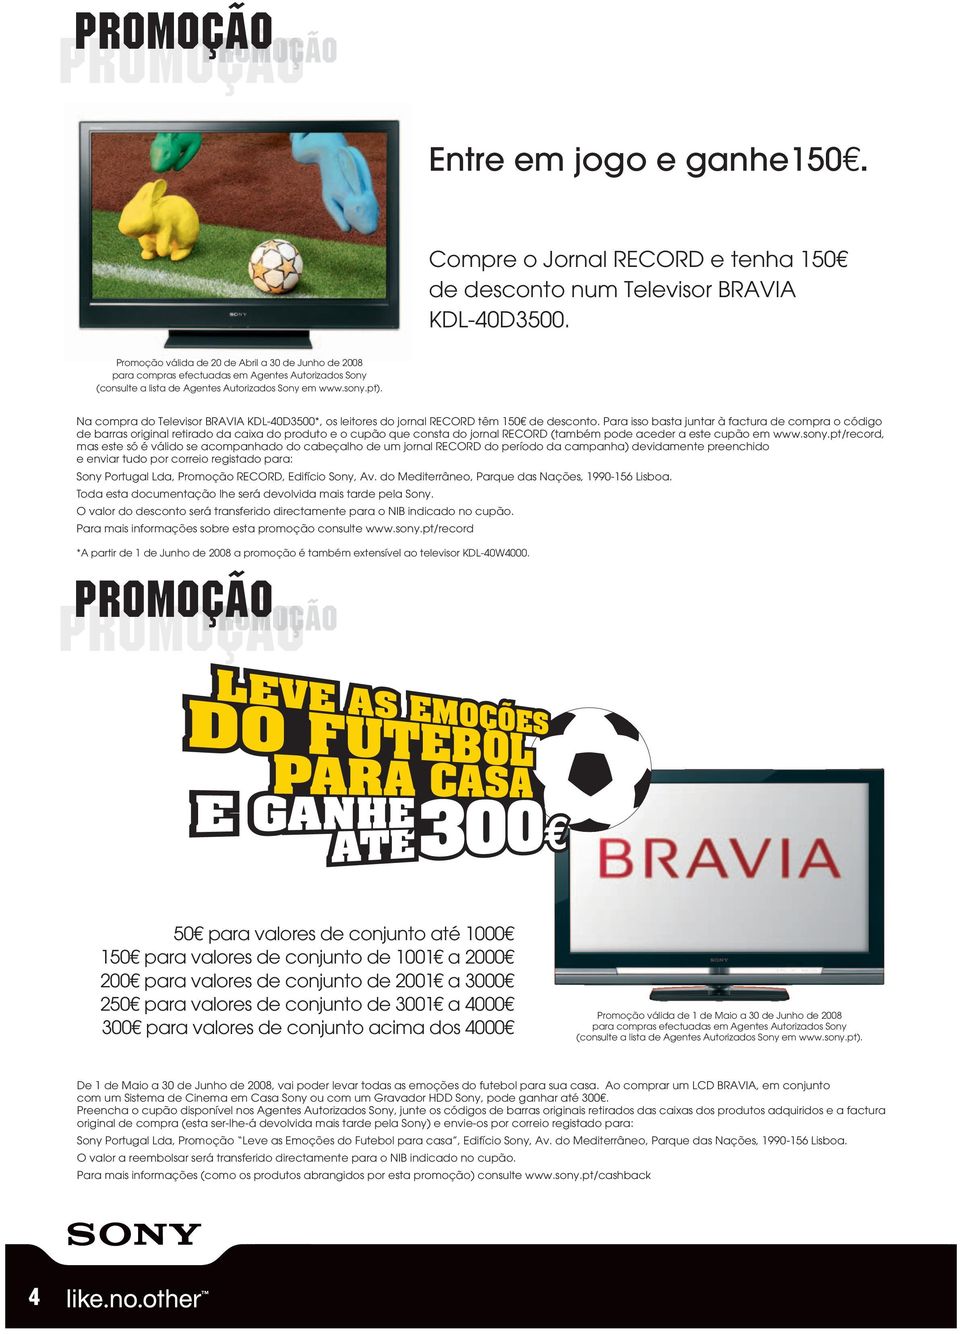 Na compra do Televisor BRAVIA KDL-40D3500*, os leitores do jornal RECORD têm 150 de desconto.